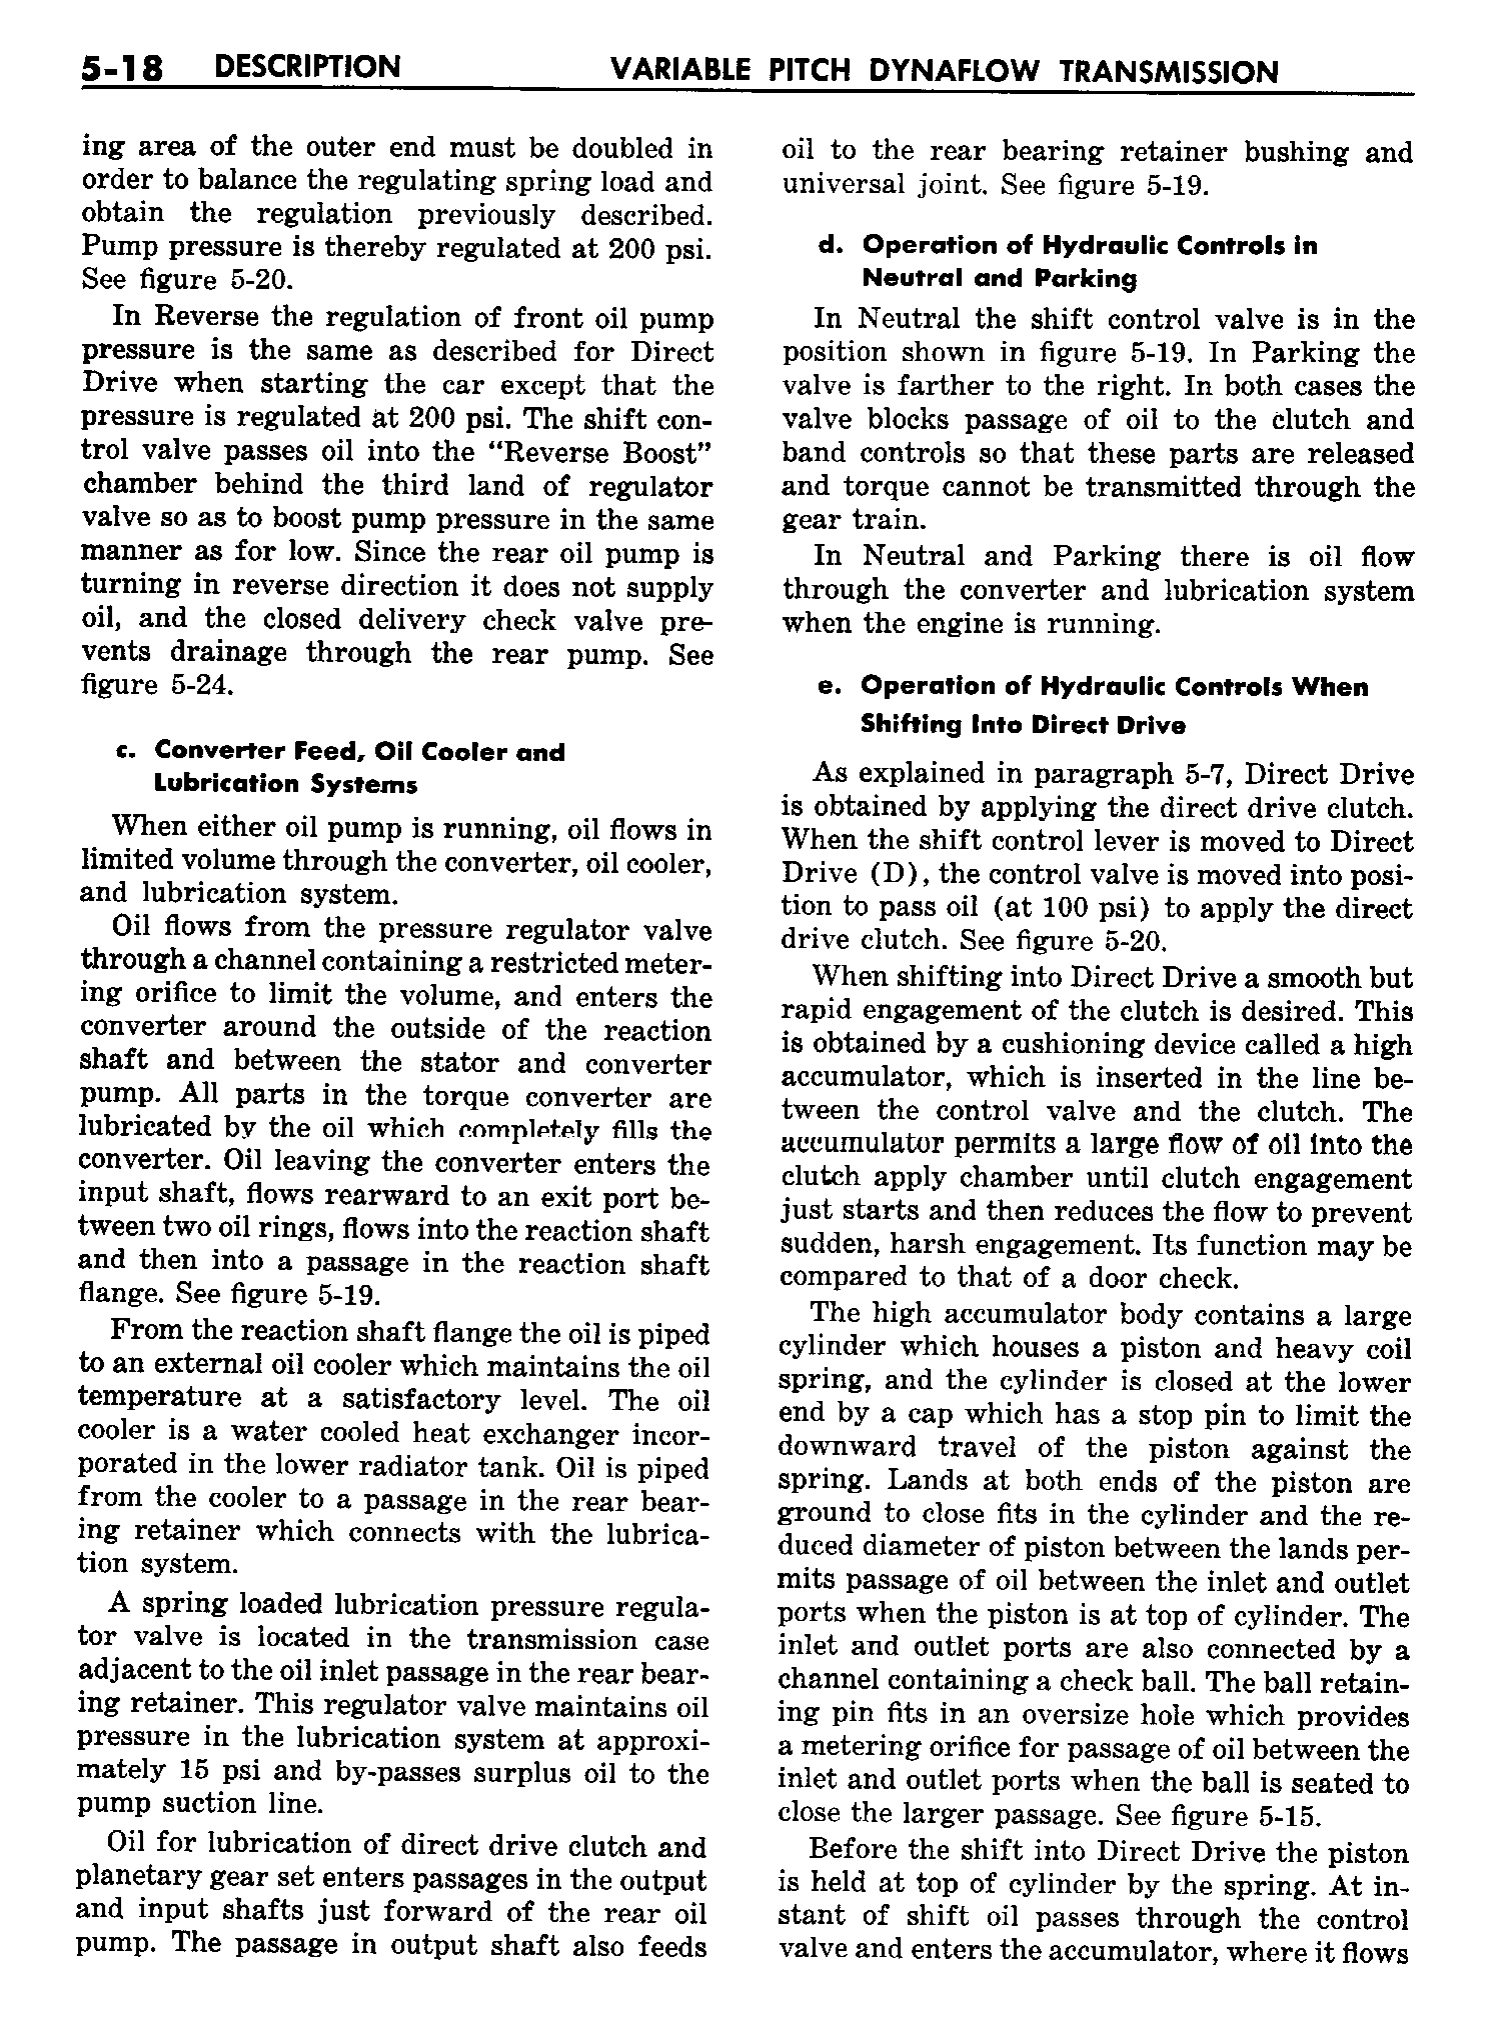 n_06 1958 Buick Shop Manual - Dynaflow_18.jpg